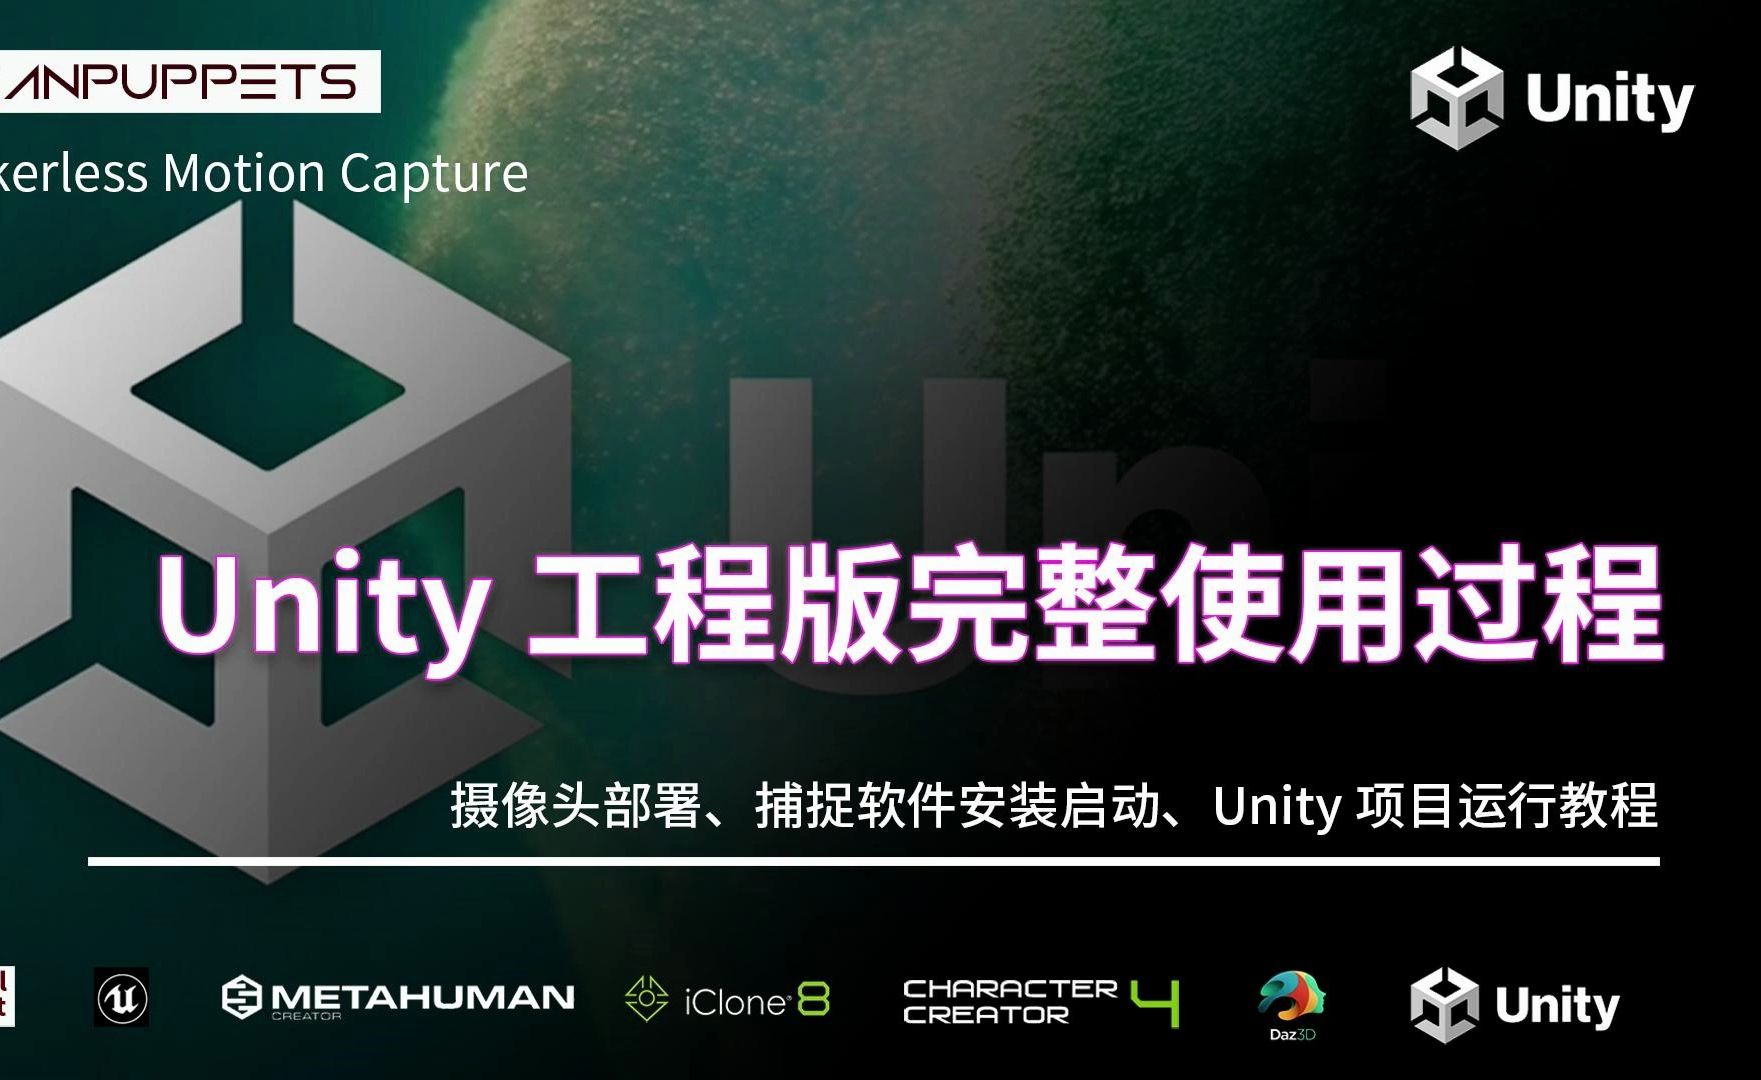 【Unity使用教程】Unity版本完整使用教程|支持Unity2021-2023、半身与全身模式自动切换、高帧率模式、内置捕捉预览窗口、通过图像预处理增强